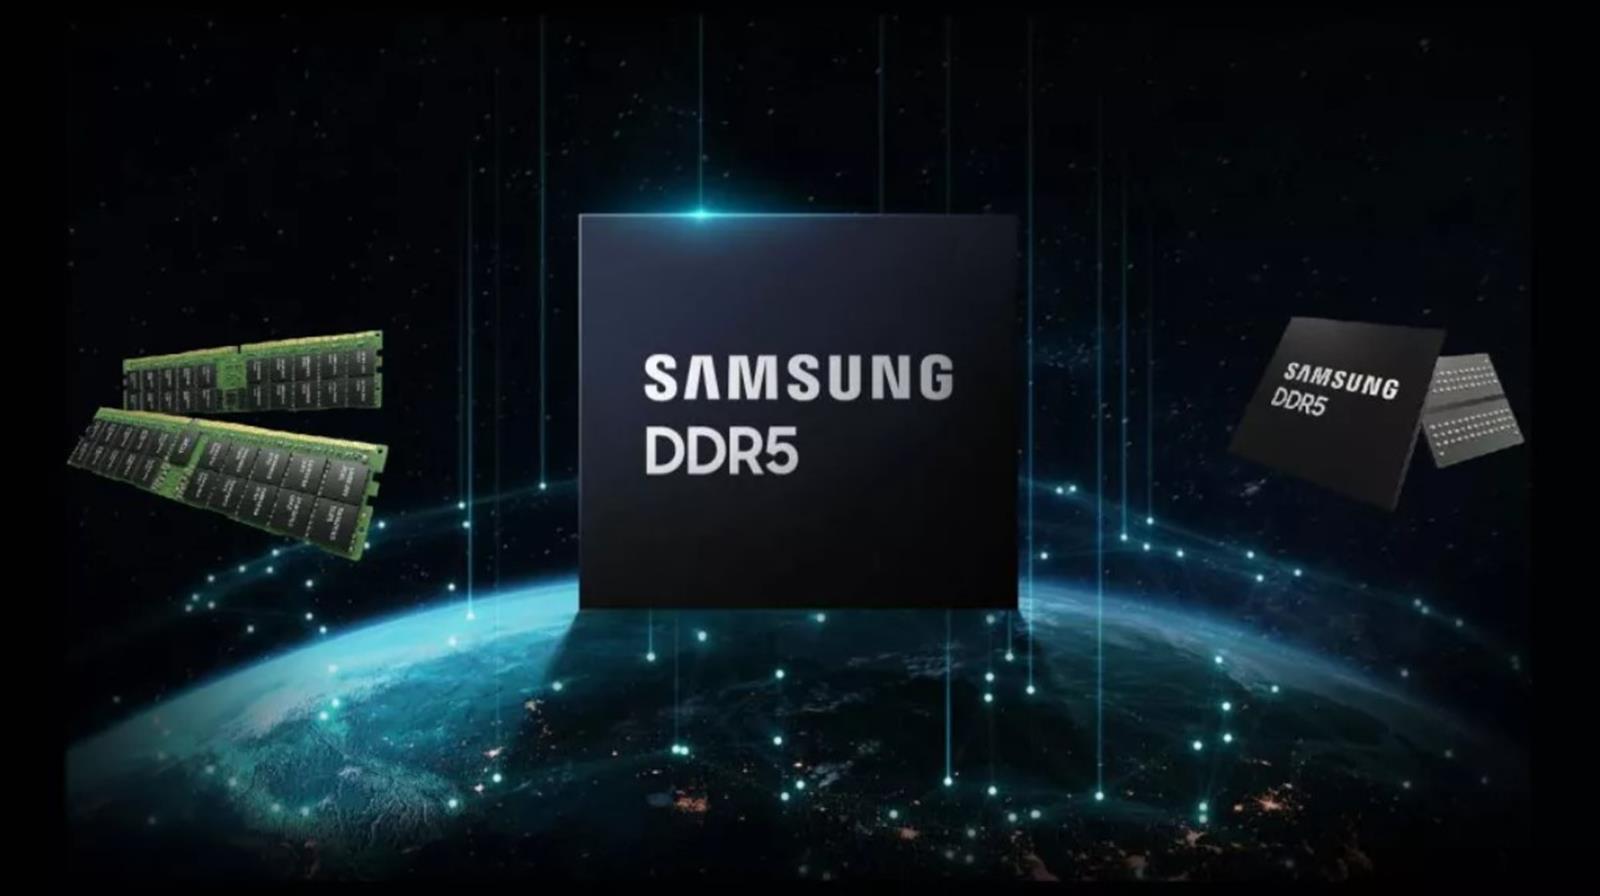 Nowy moduł DDR5 Samsunga, Nowy moduł DDR5, DDR5, Samsung DDR5